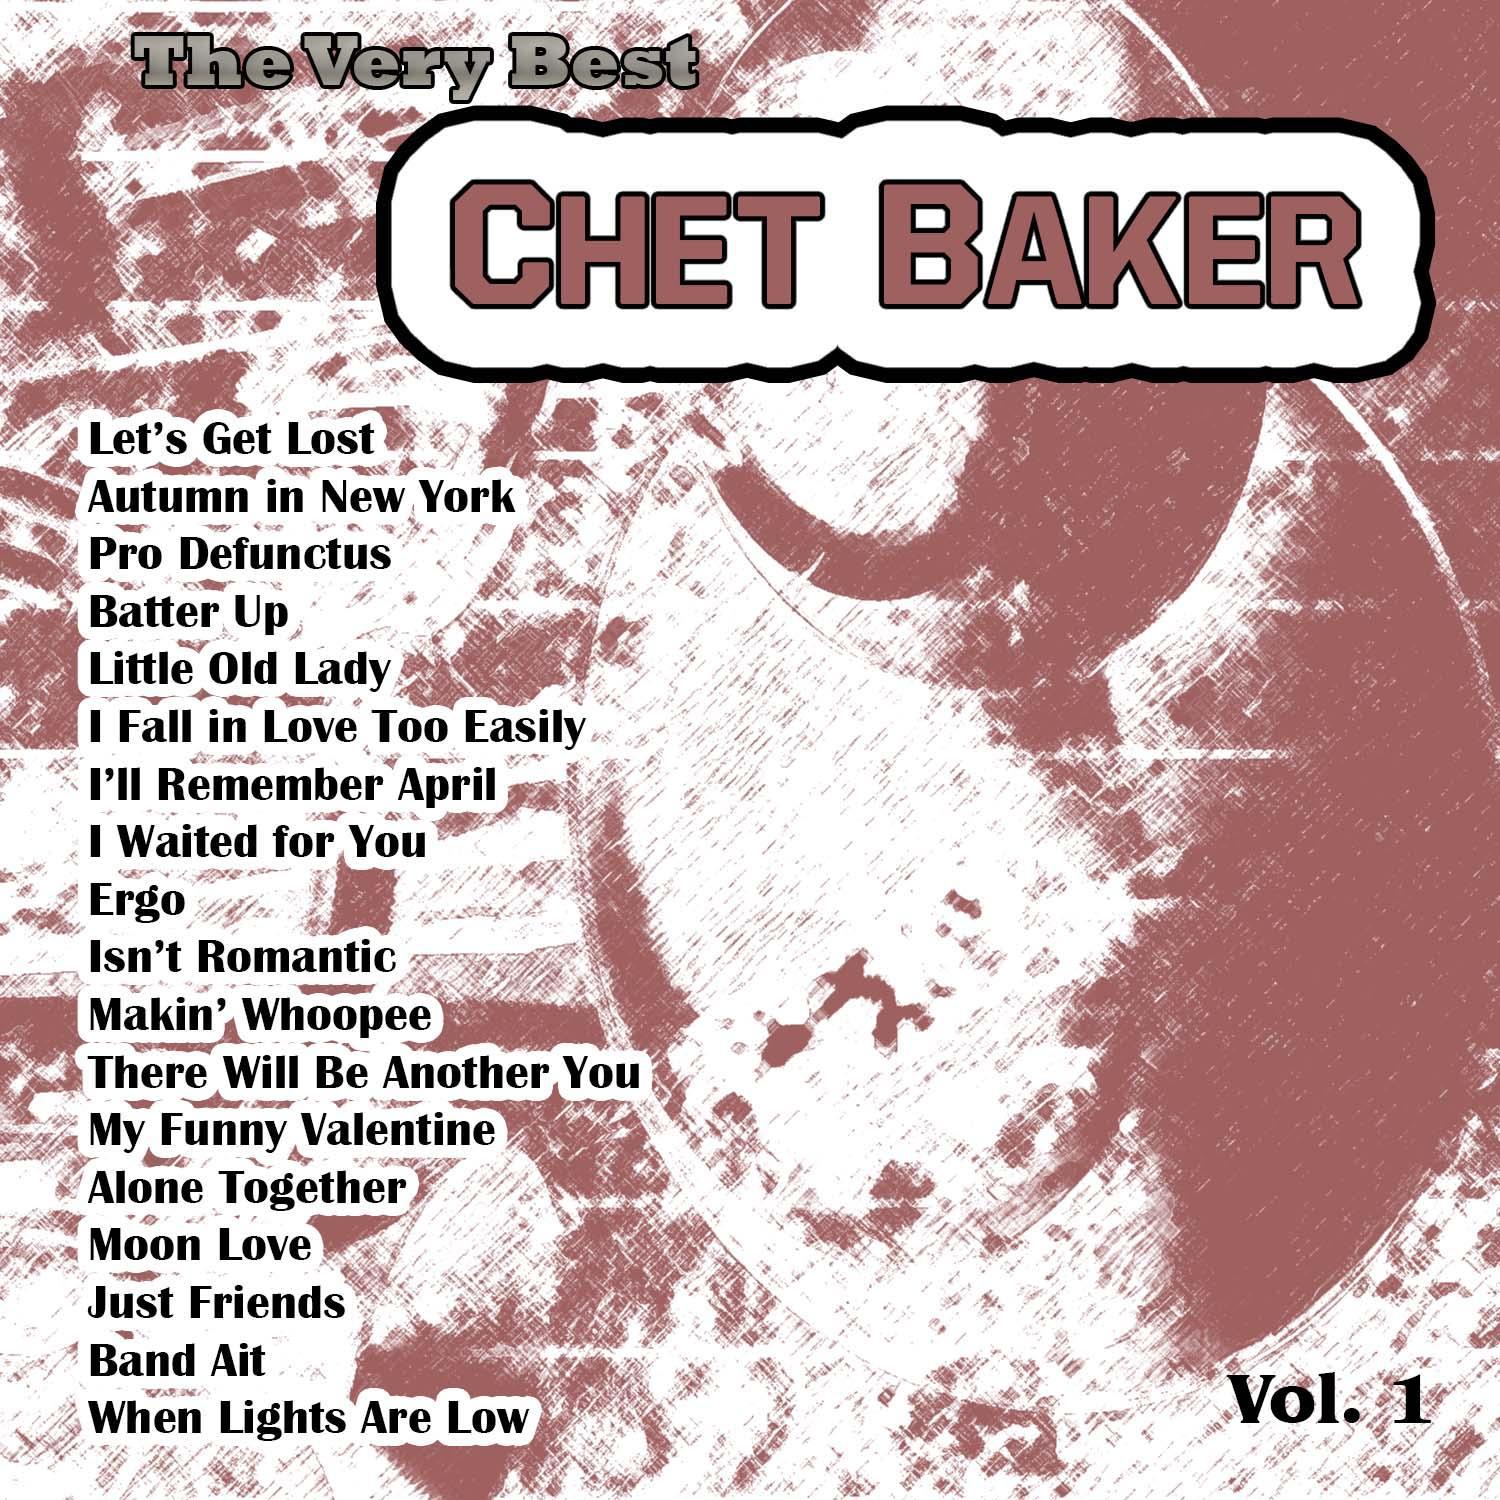 The Very Best: Chet Baker Vol. 1